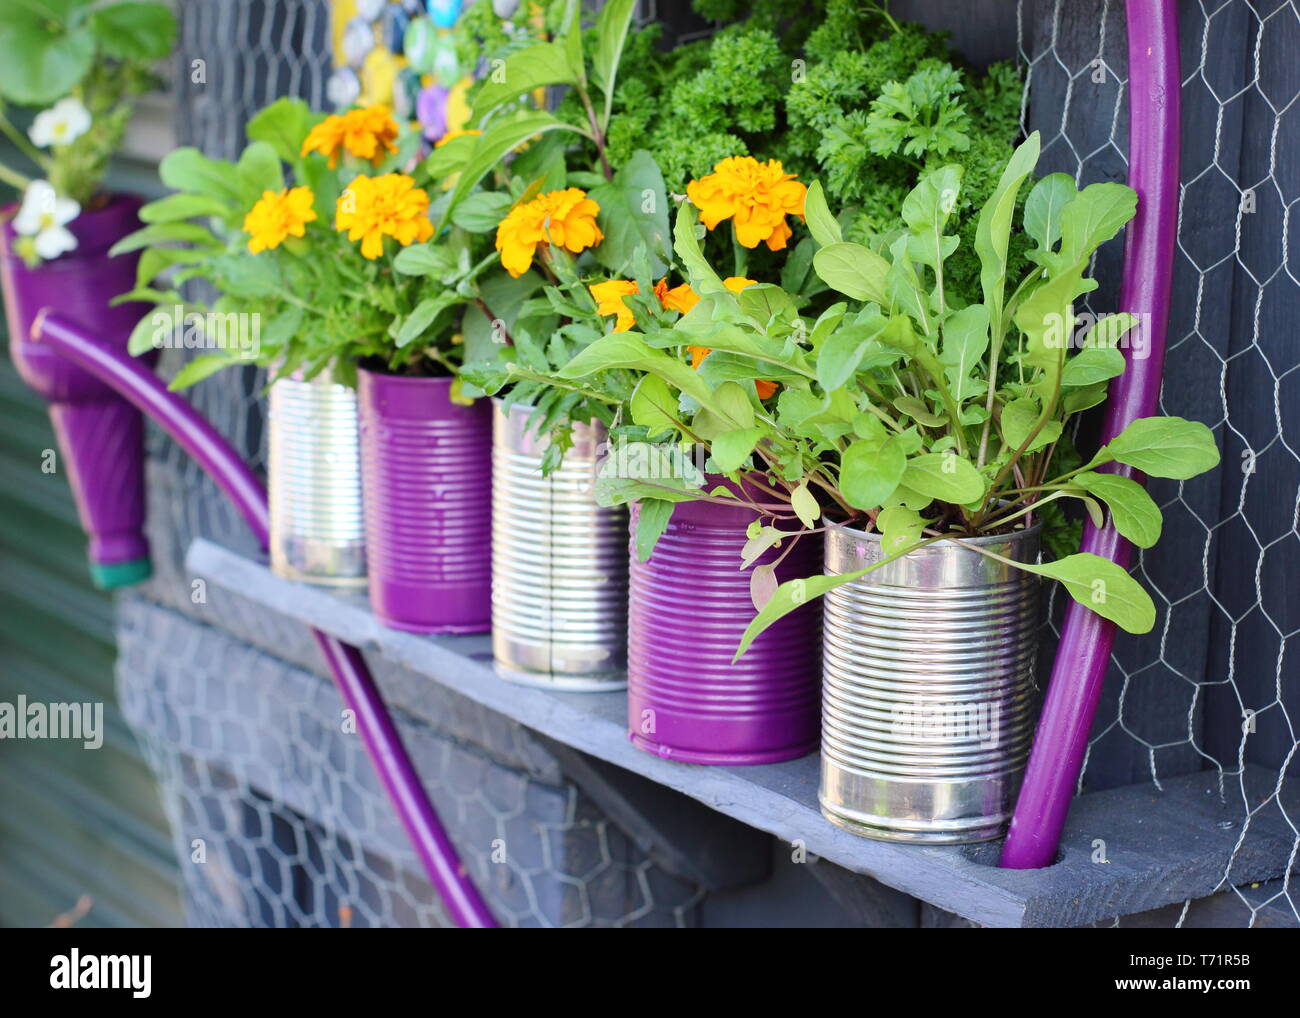 Kleiner Garten Idee. Upcycled Blechdosen in Pflanzmaschinen mit Kräutern und Ringelblumen, Großbritannien Stockfoto